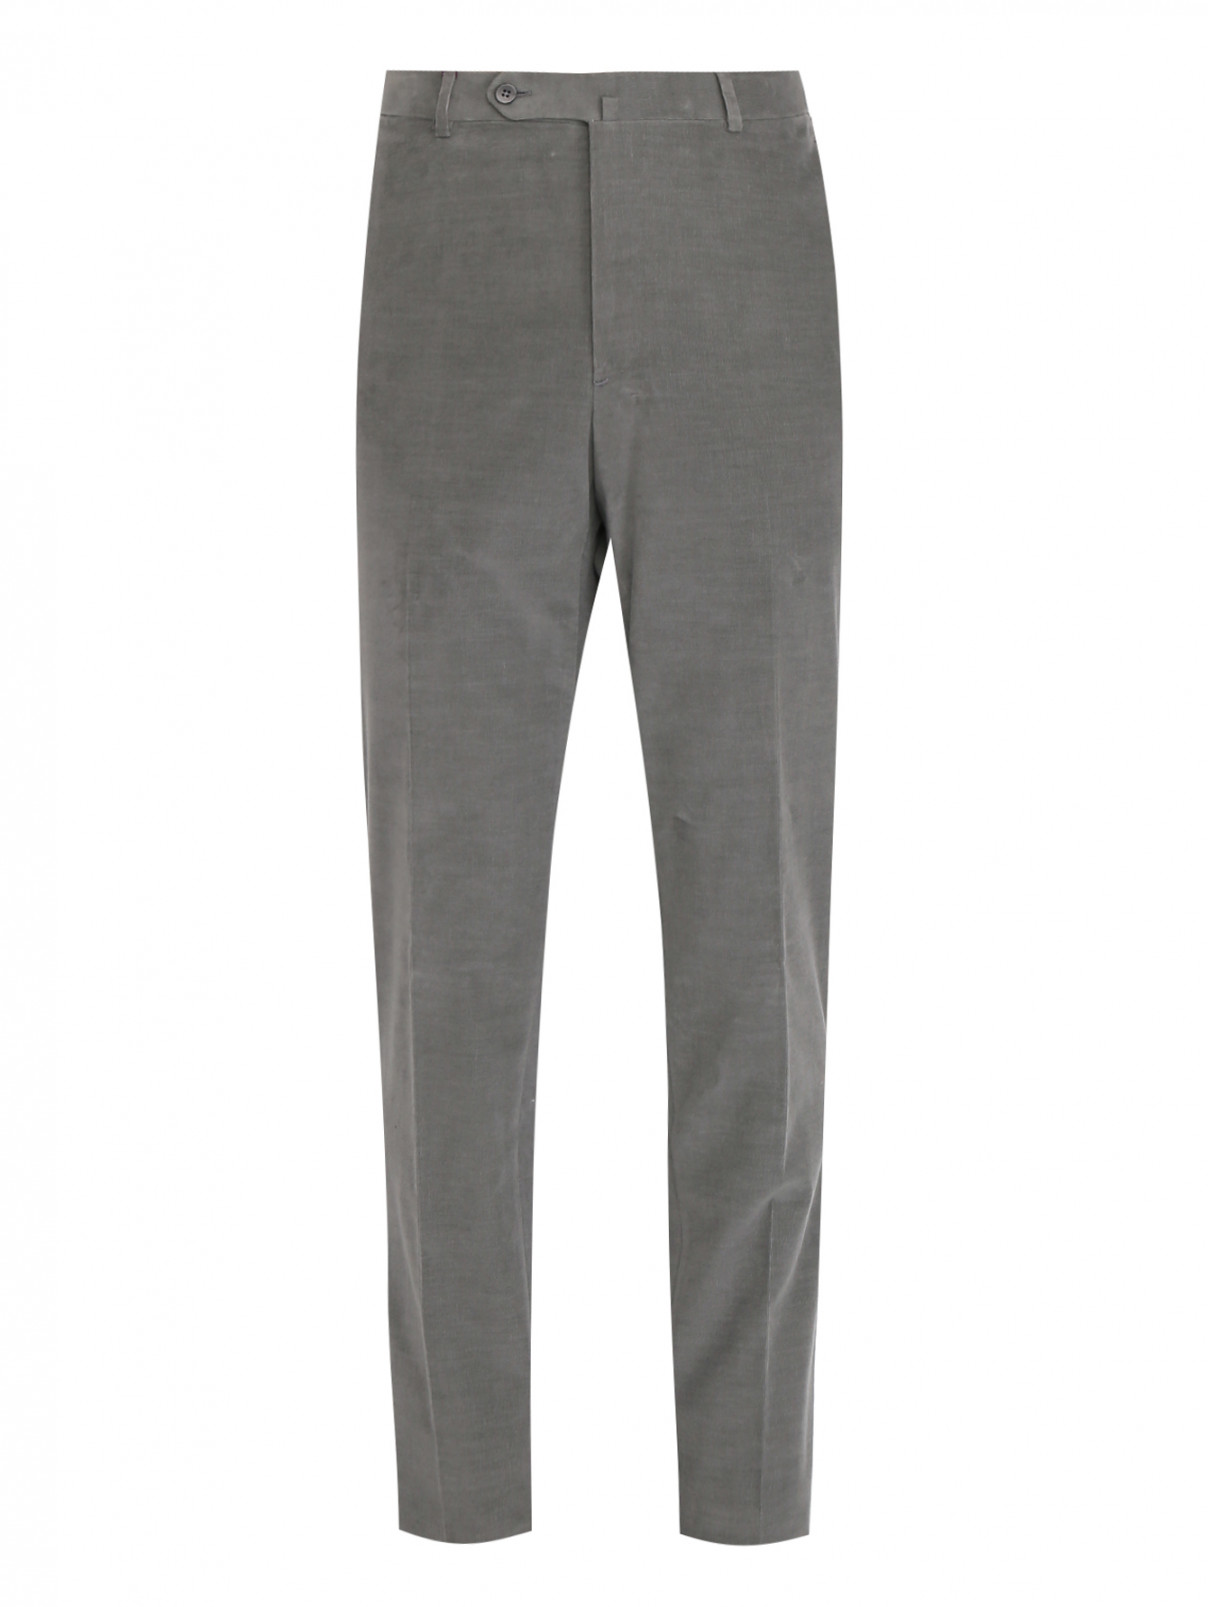 Вельветовые брюки с карманами Isaia  –  Общий вид  – Цвет:  Серый